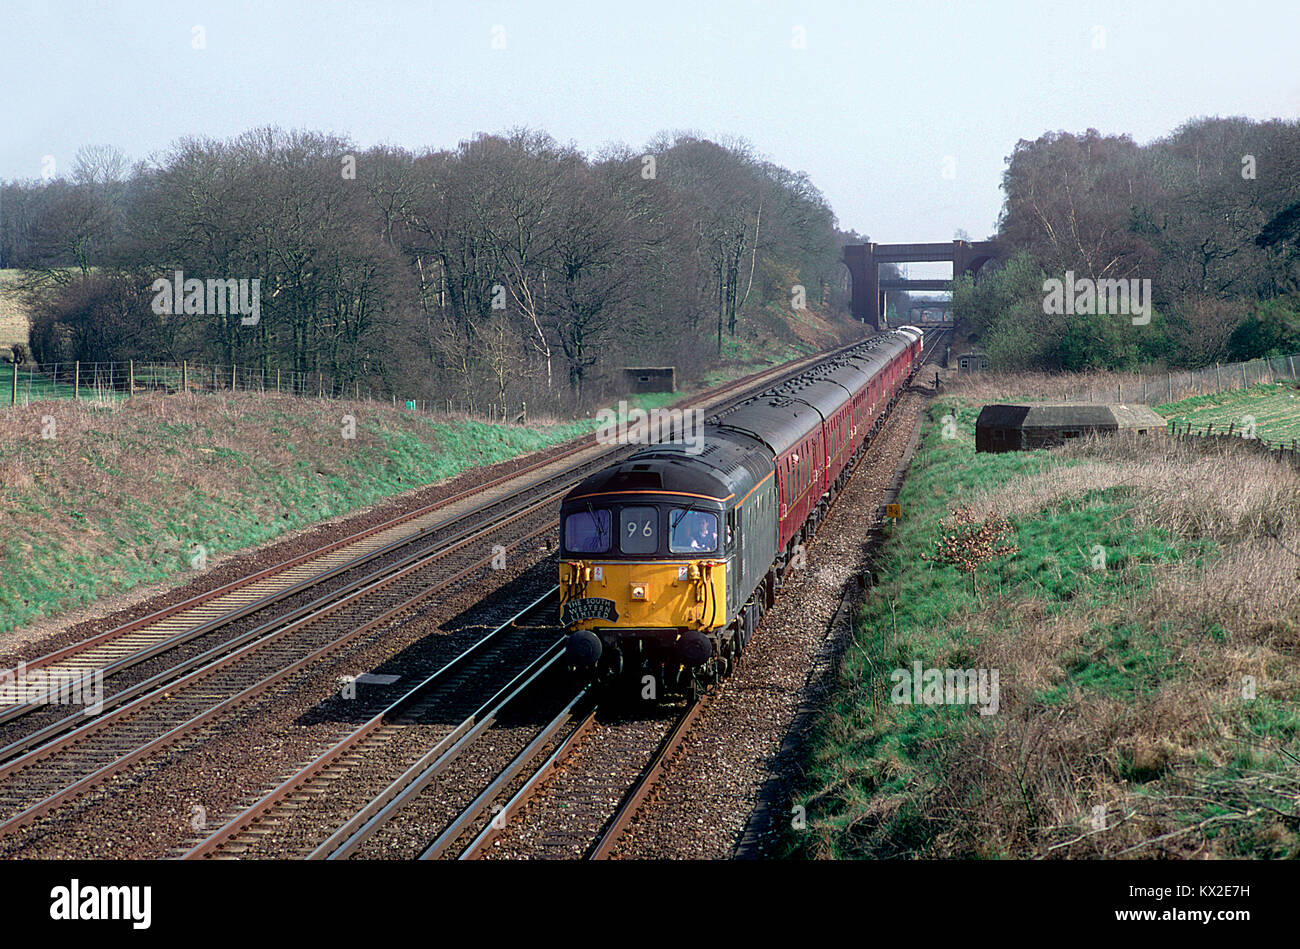 Un certain nombre de locomotives diesel de la classe 33 33101 le travail de la jambe diesel "South Western Limited" Potbridge à charte de la vapeur dans le Hampshire. Le 20 mars 1993. Banque D'Images